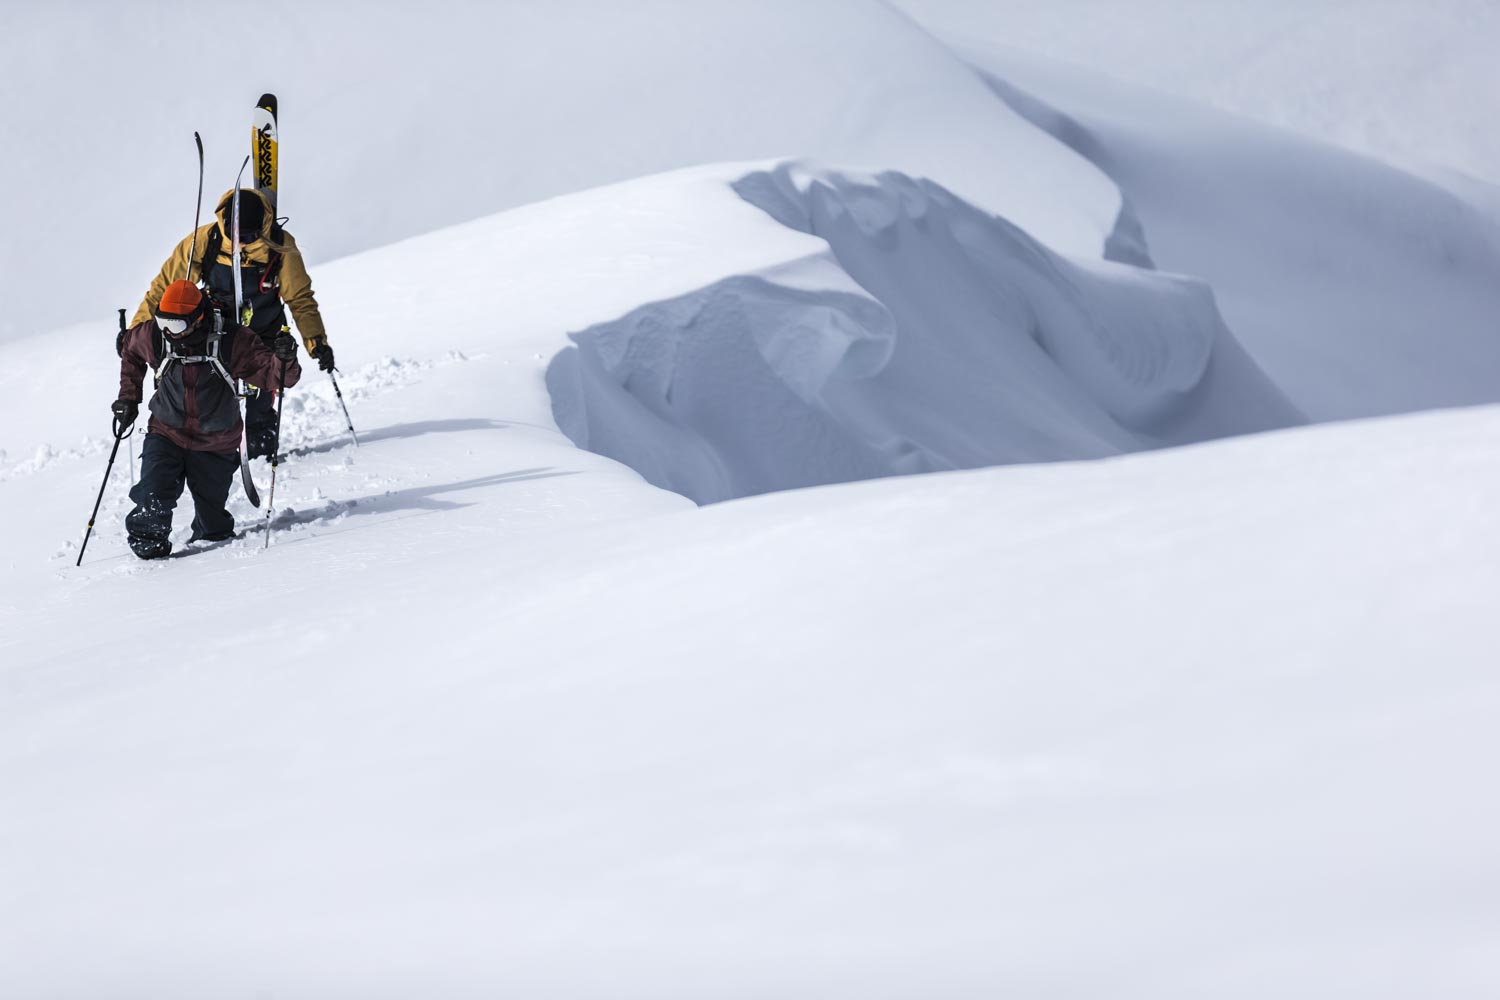 Planks Clothing - Fergus Rennie - Jim Adlington - Hiking - Snow Cornice - Pisteurs Couloir - Val d'Isère